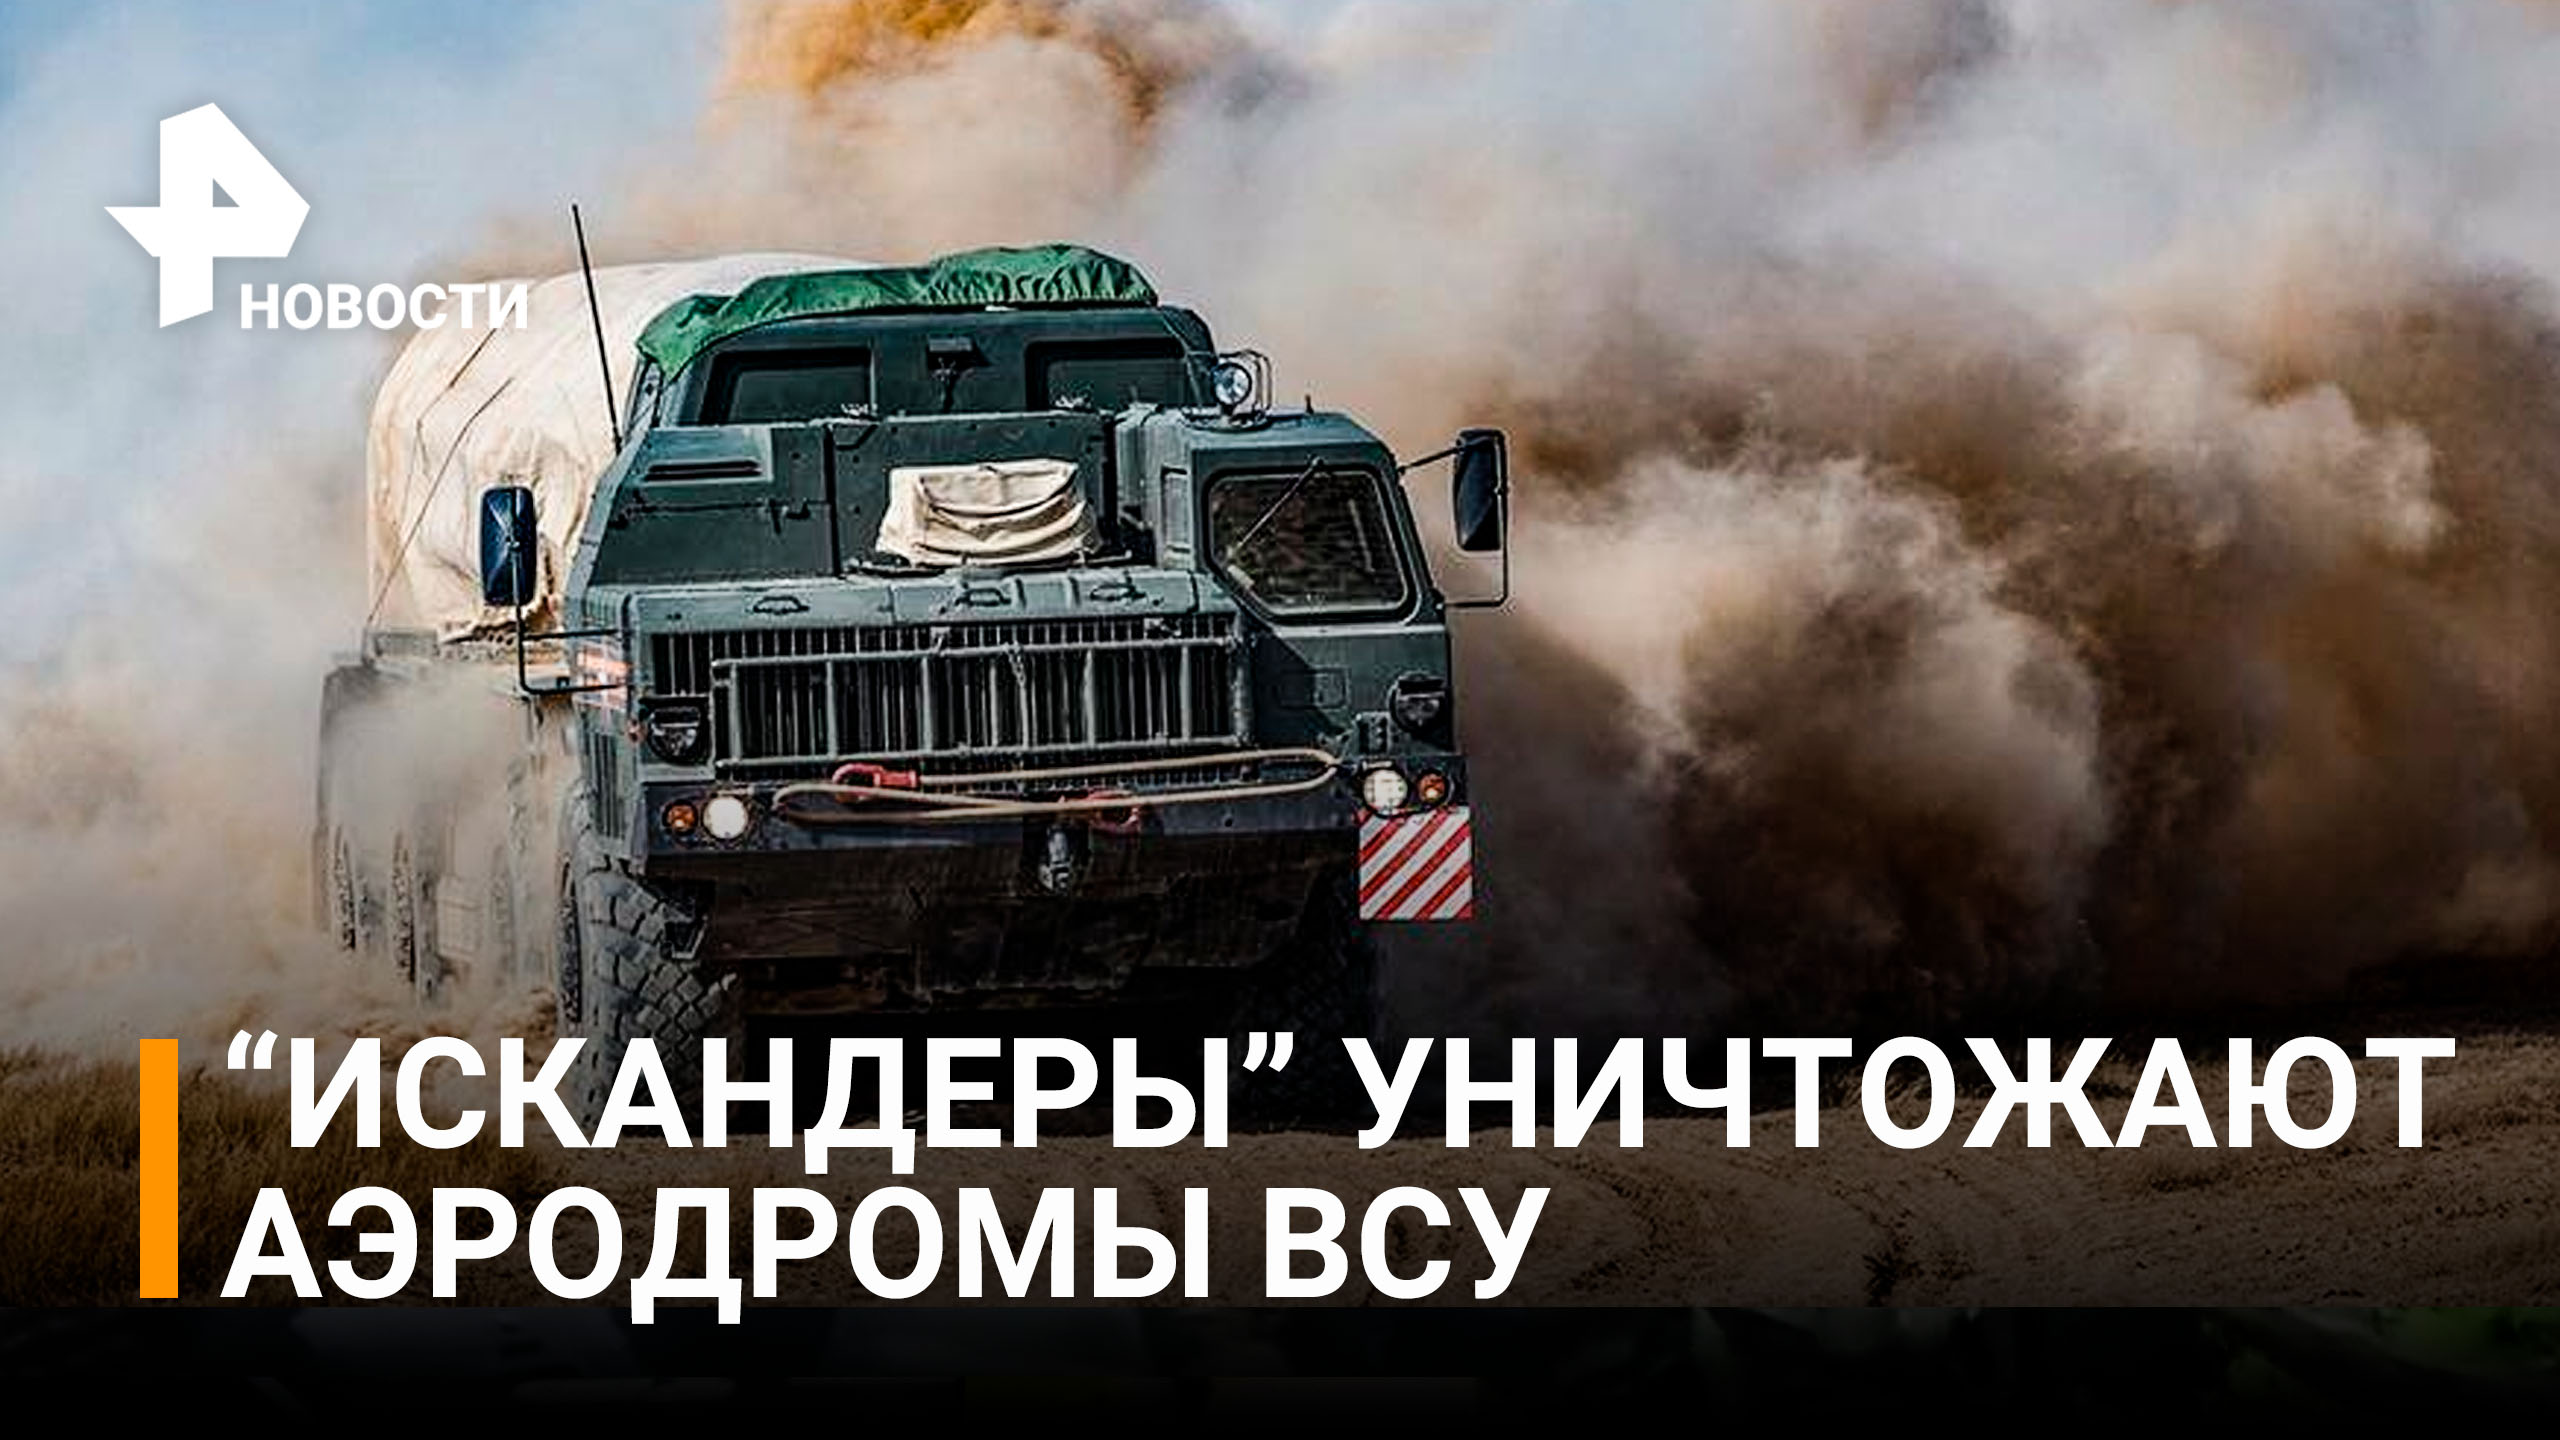 Как "Искандеры" уничтожают аэродромы ВСУ в ходе спецоперации / РЕН Новости